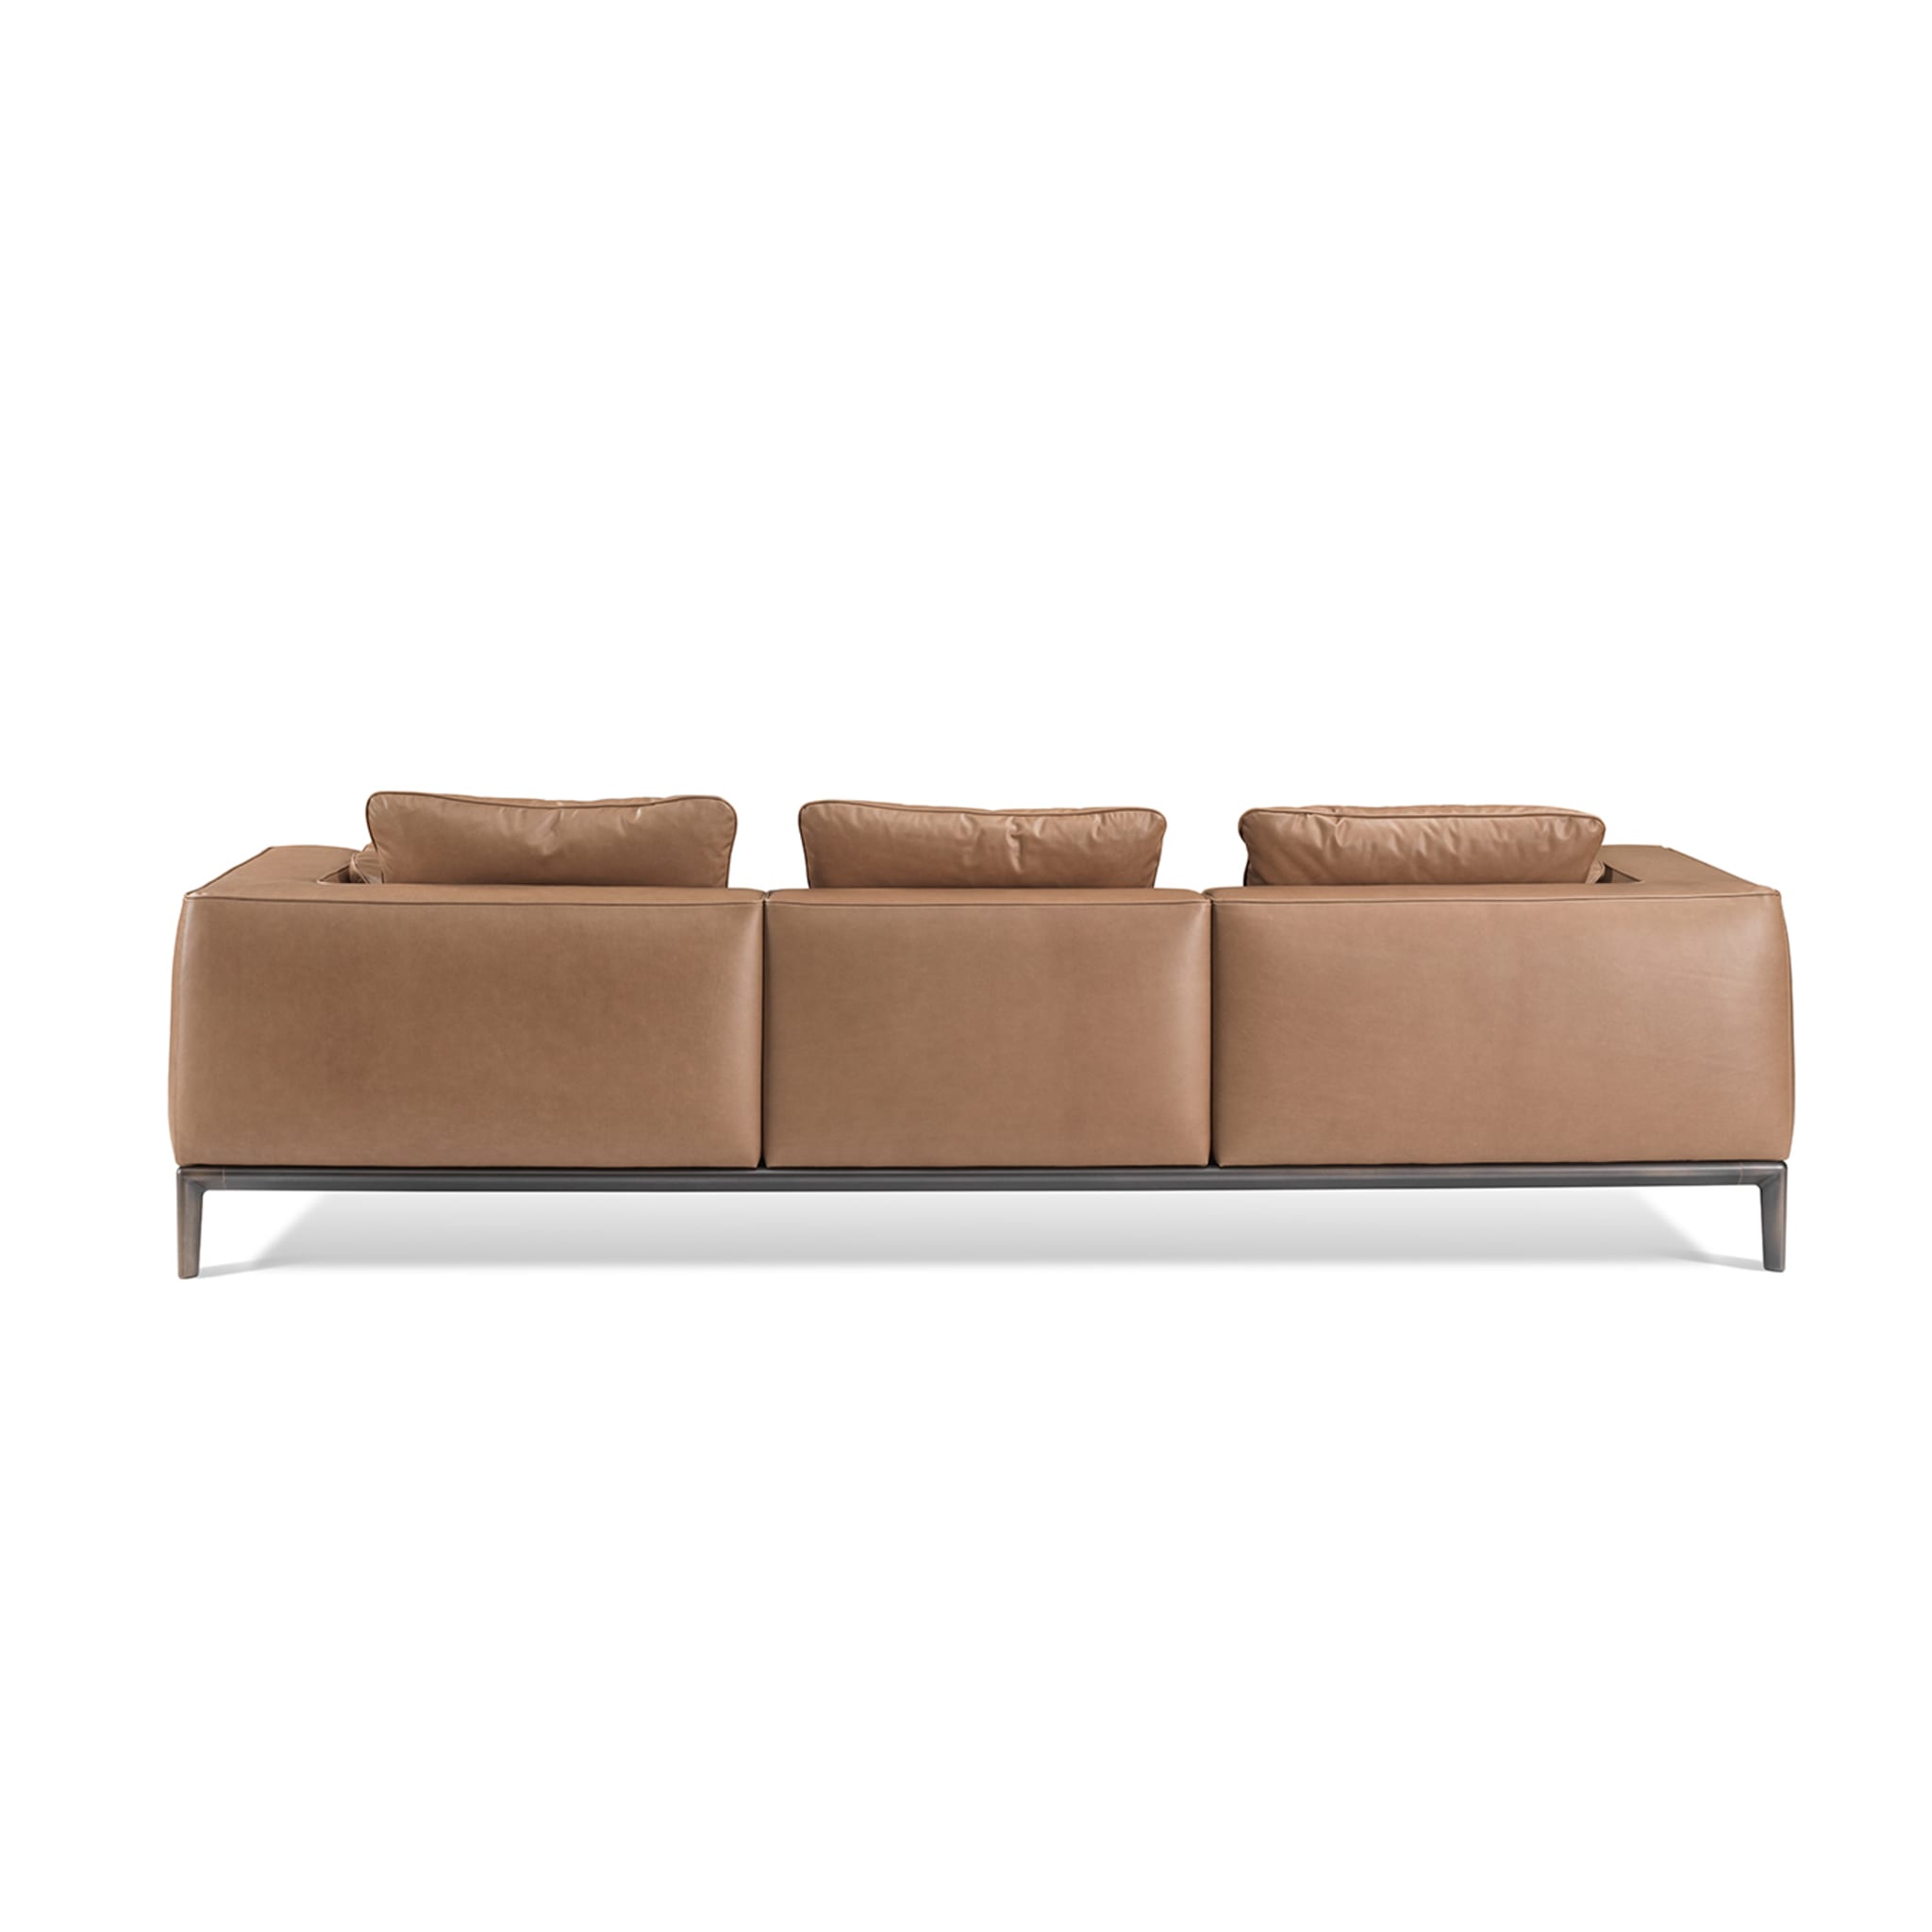 Milo Brown Leather Sofa by Stefano Giovannoni - Alternative view 3